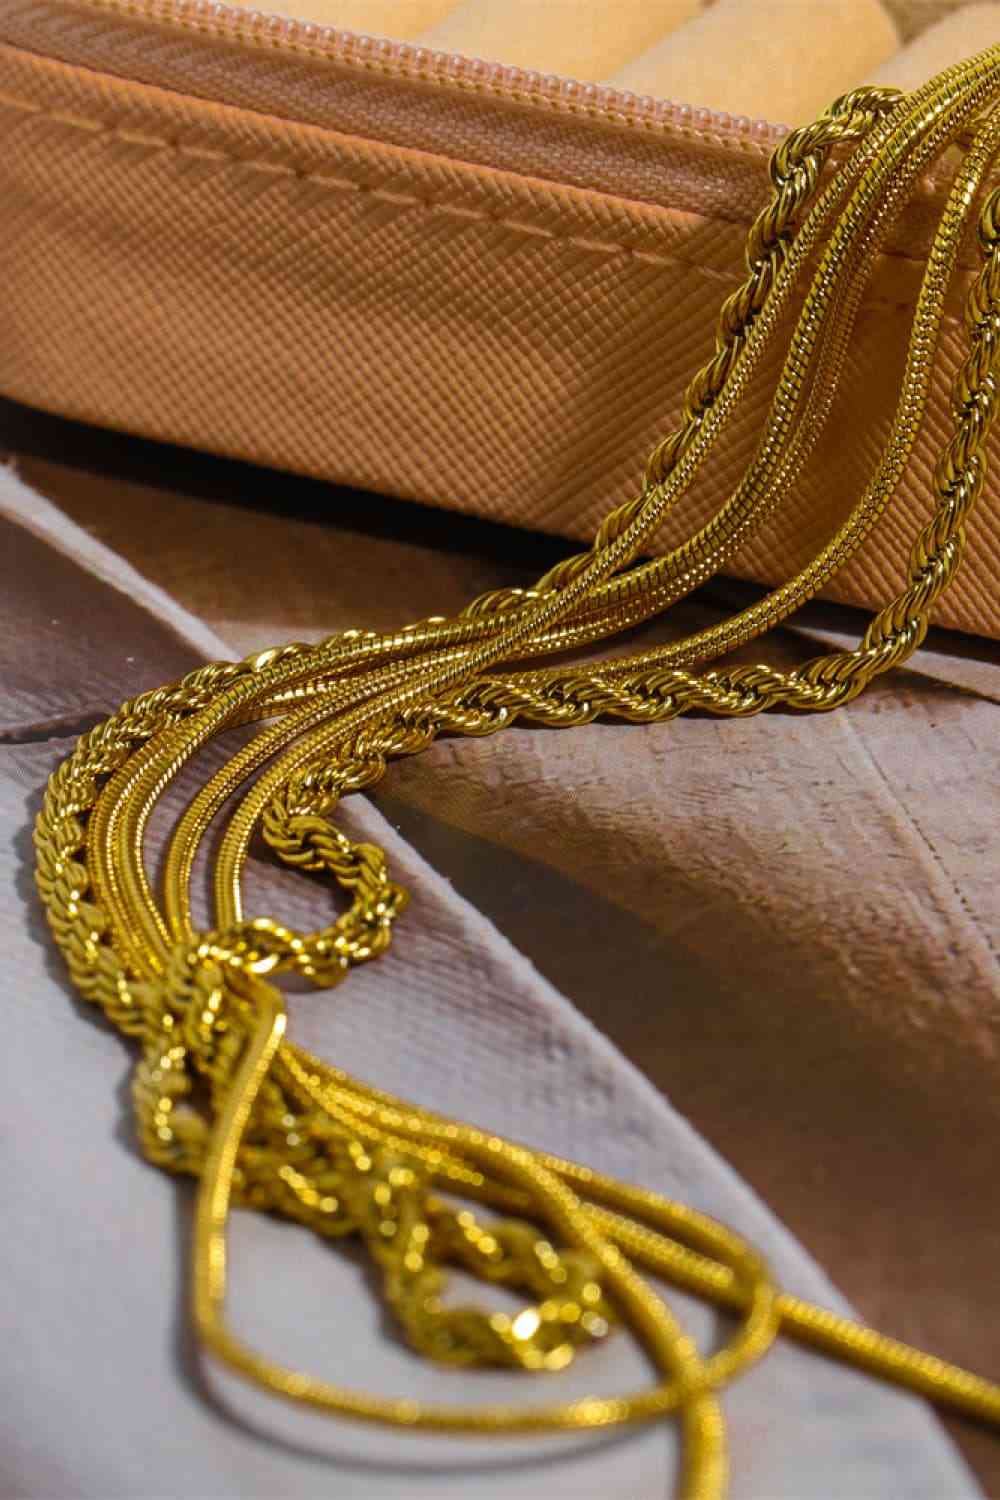 Dreischichtige Halskette aus Edelstahl mit 18-Karat-Vergoldung